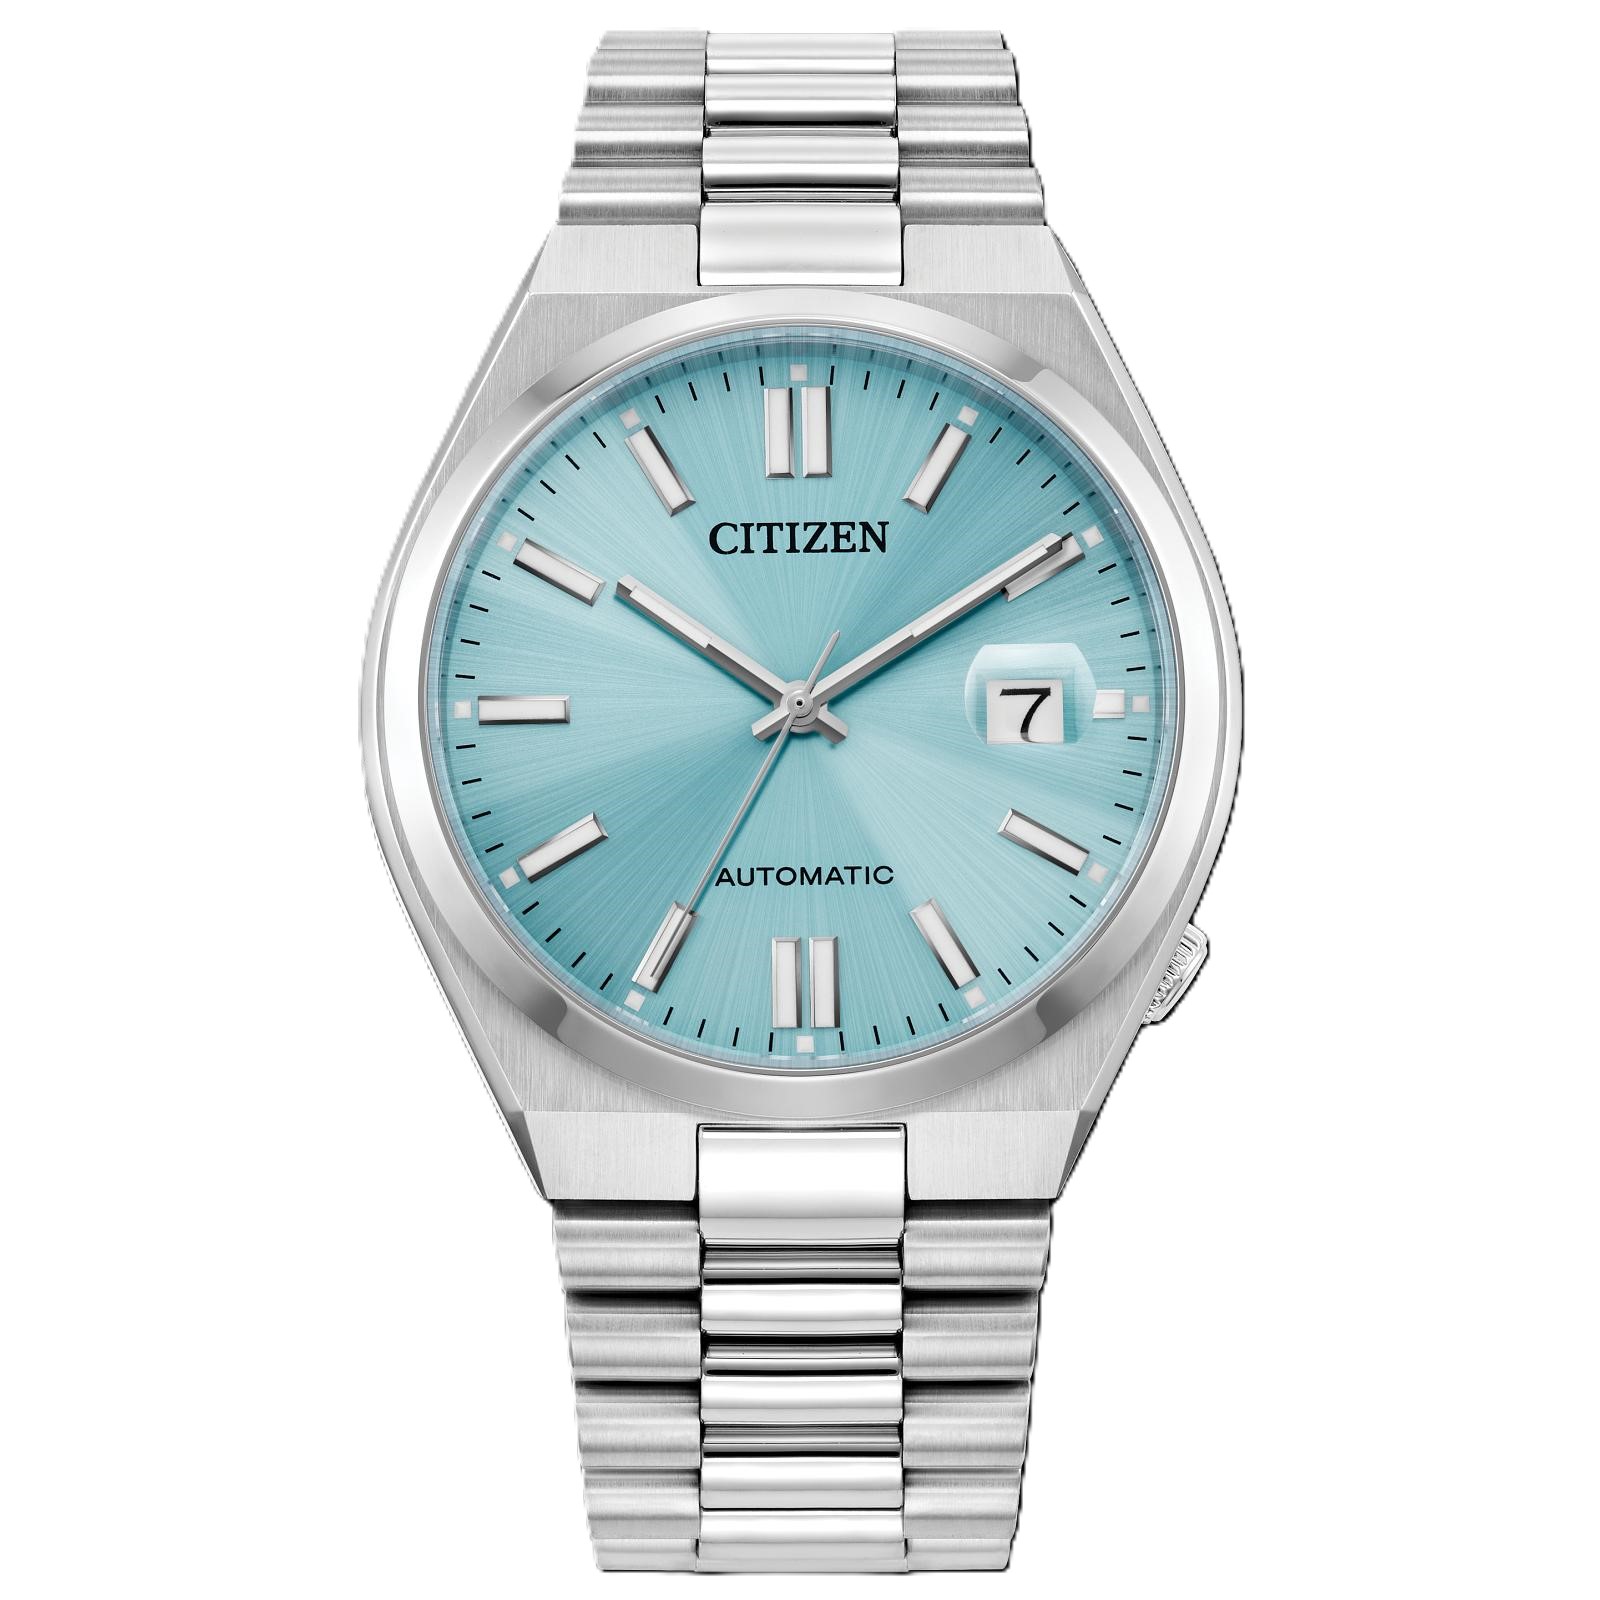 Citizen "Tsuyosa" Automatic NJ015 Series Watch